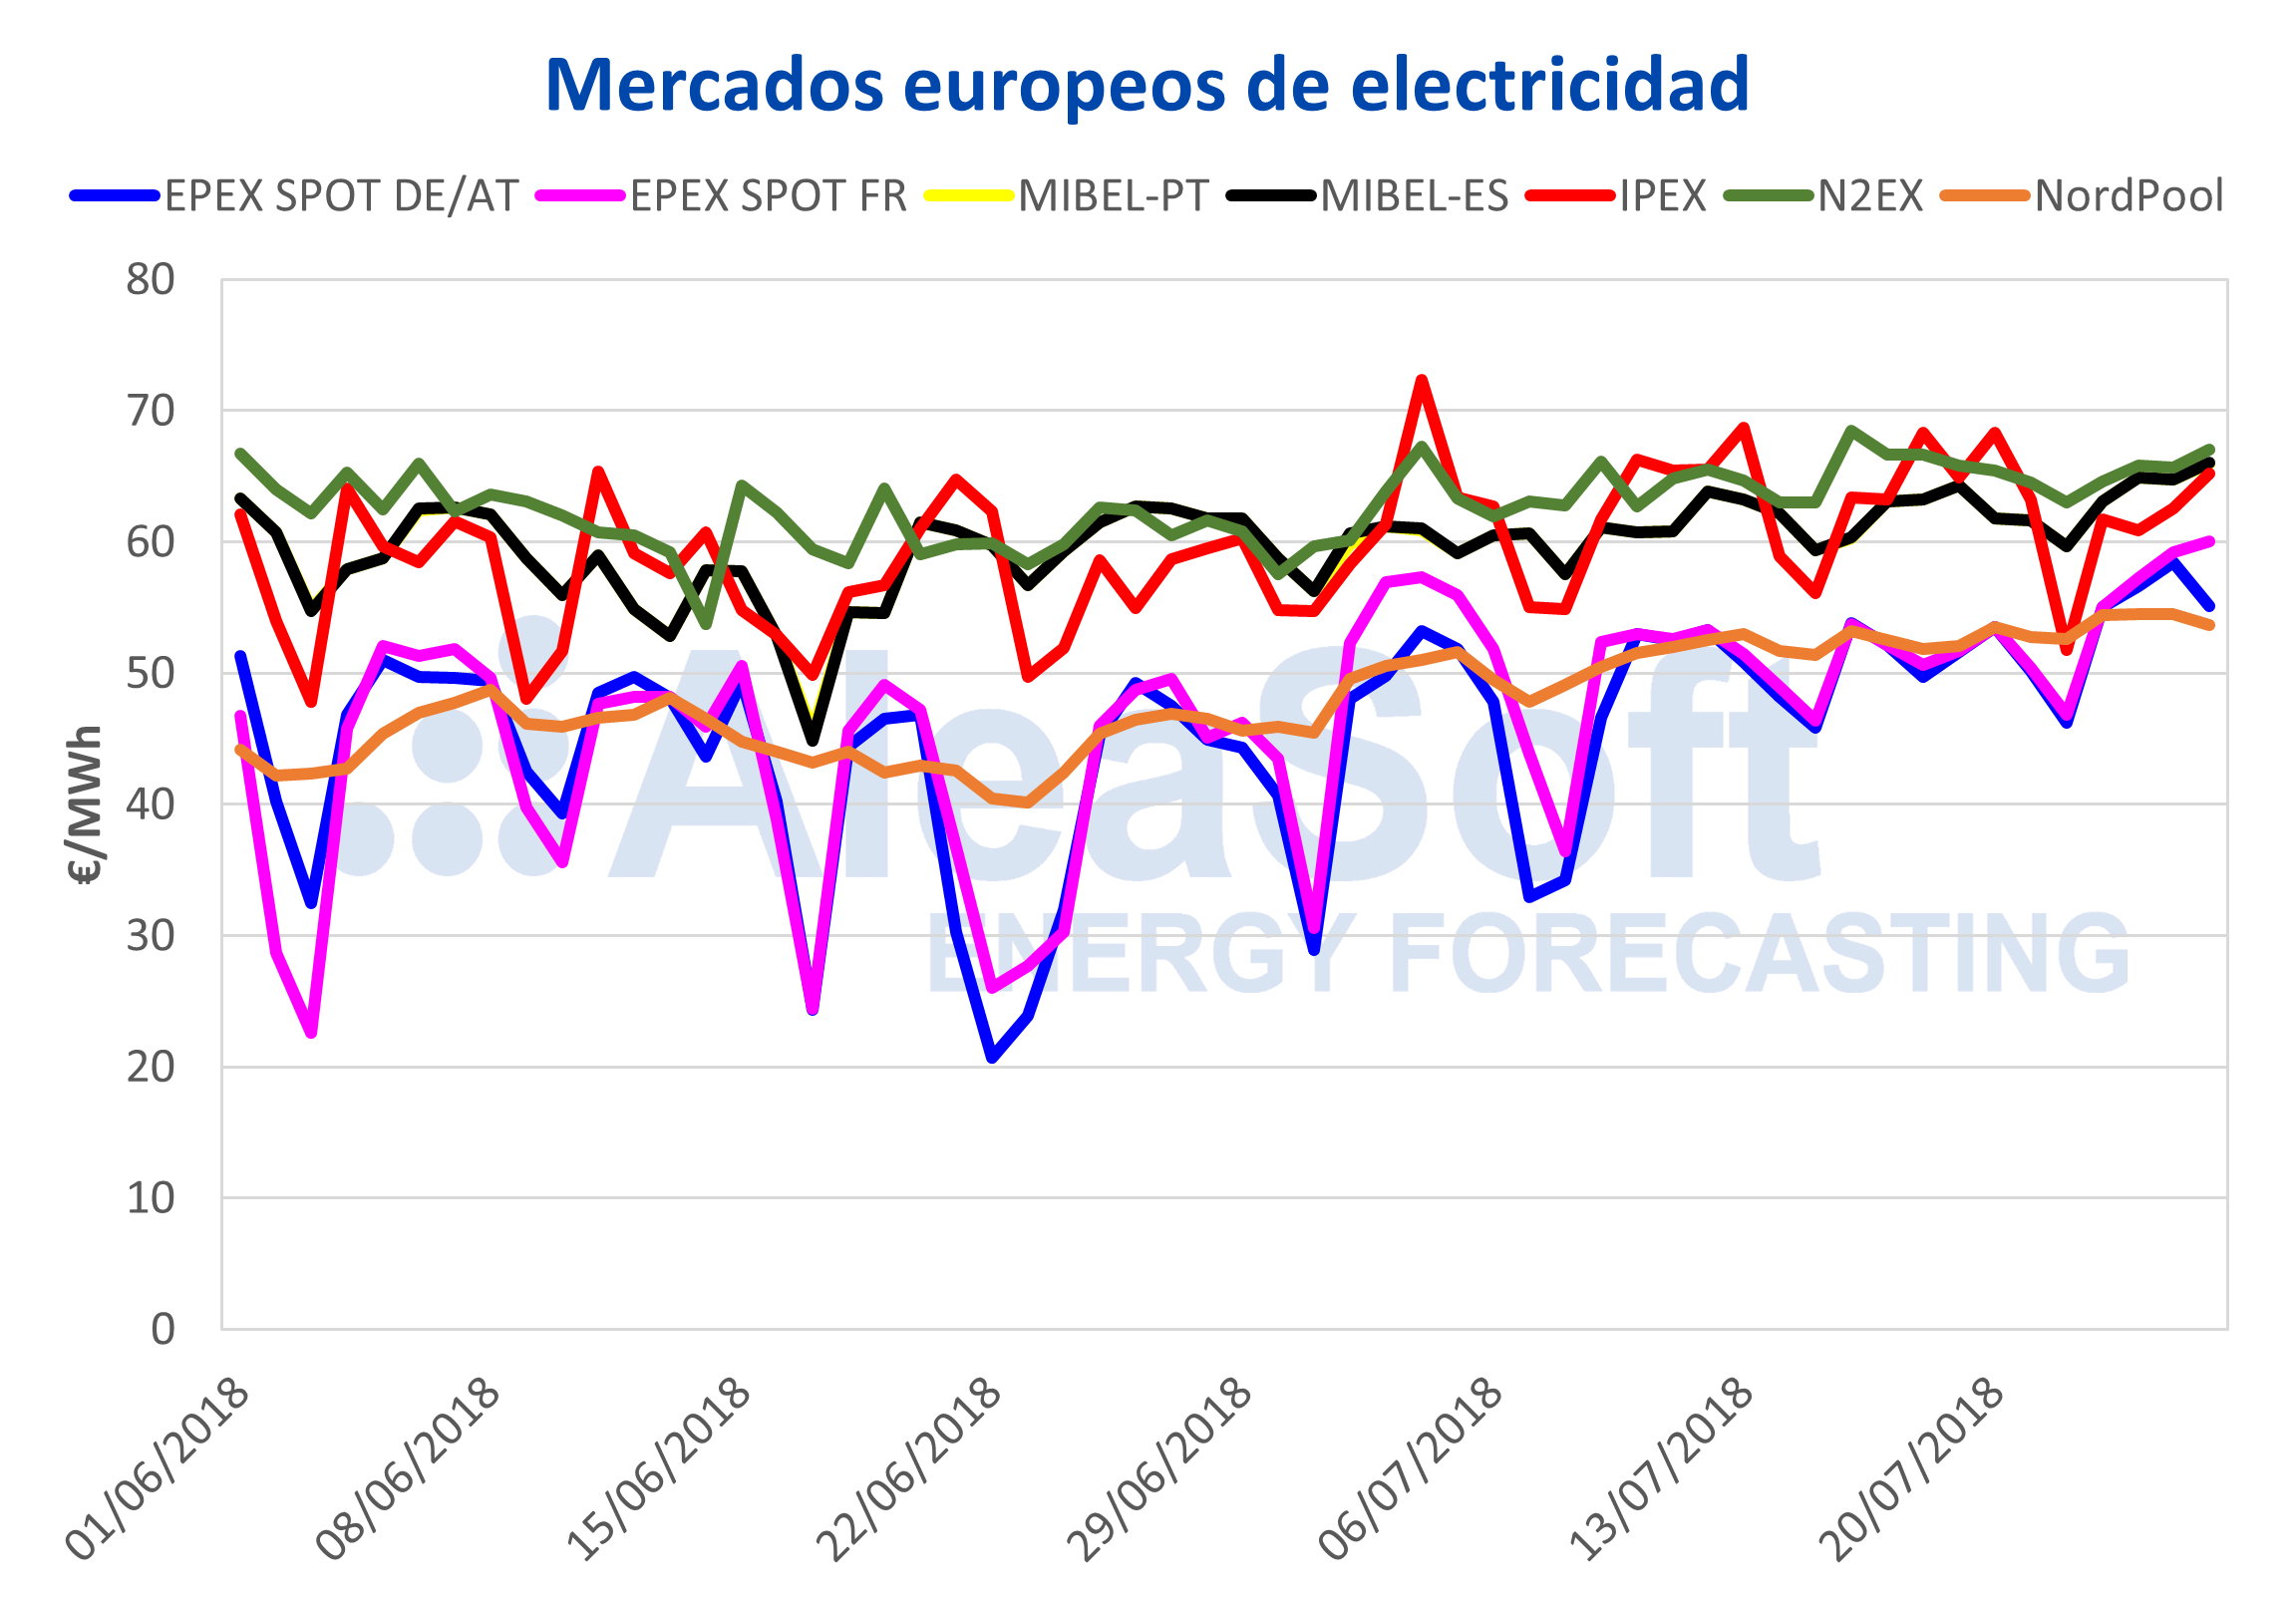 AleaSoft - Precios de los mercados europeos de electricidad